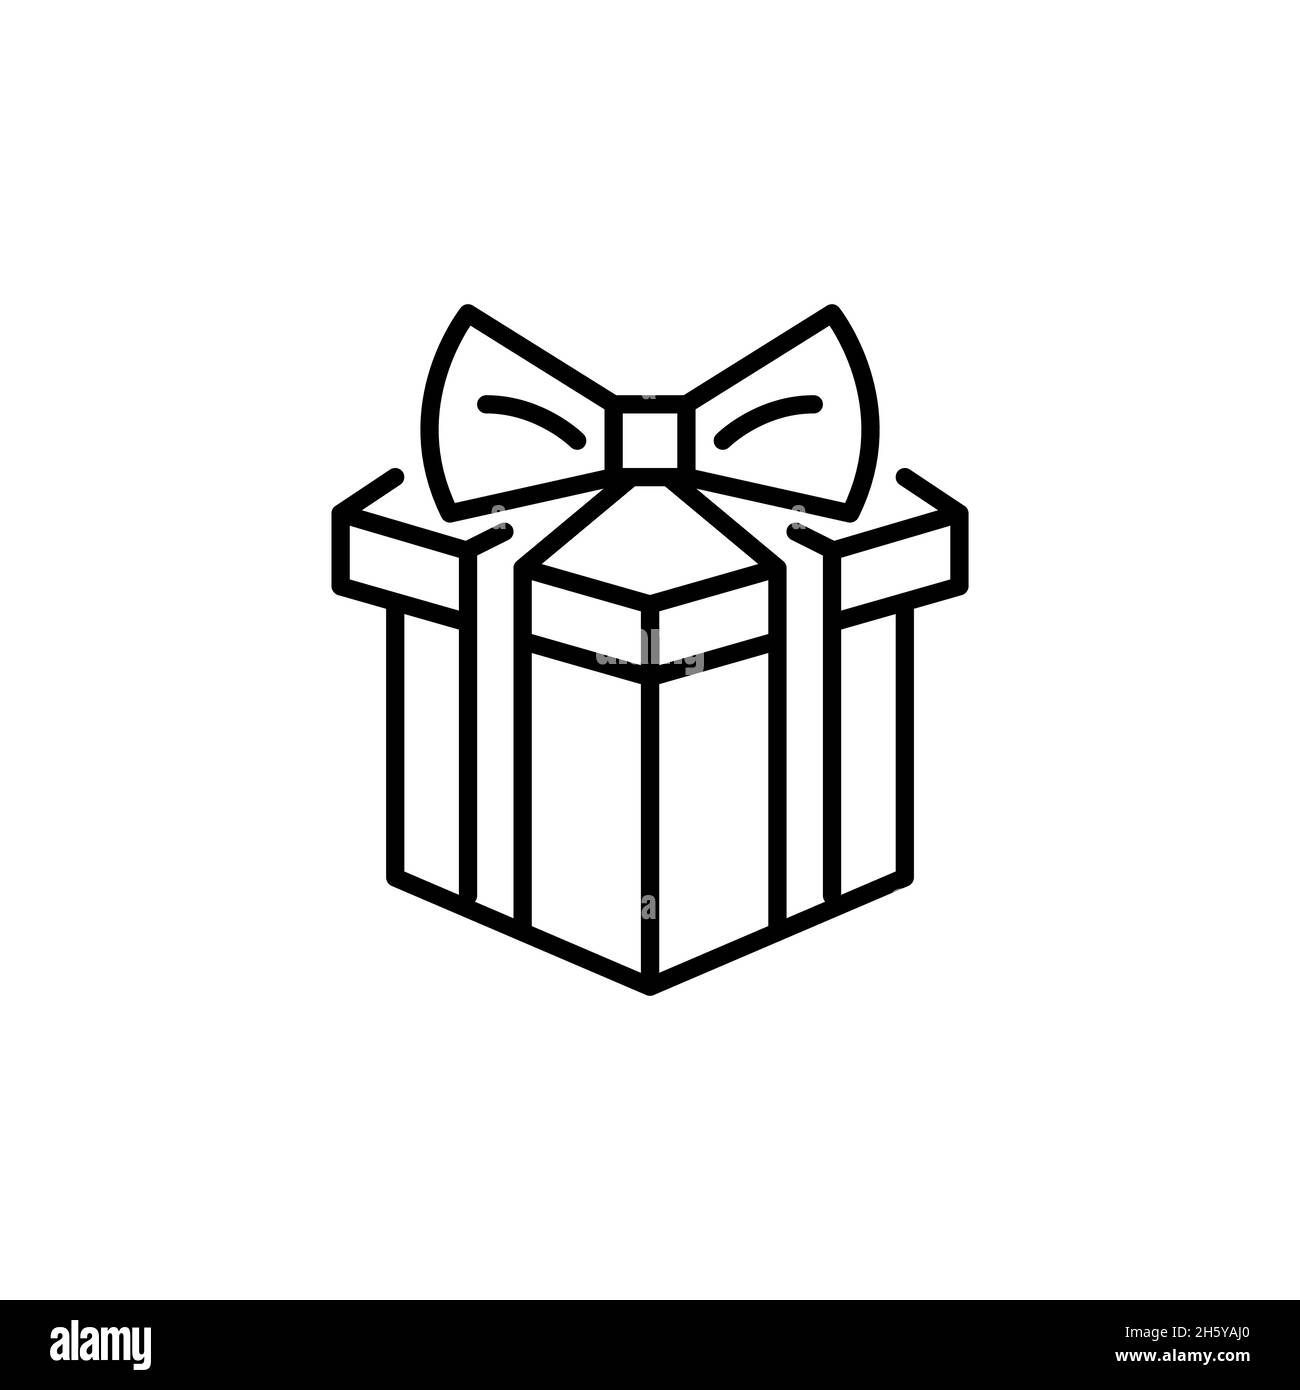 Confezione regalo con un nastro legato sulla parte superiore. Compleanno, Natale o altri festeggiamenti presenti. Pixel Perfect, tratto modificabile Illustrazione Vettoriale